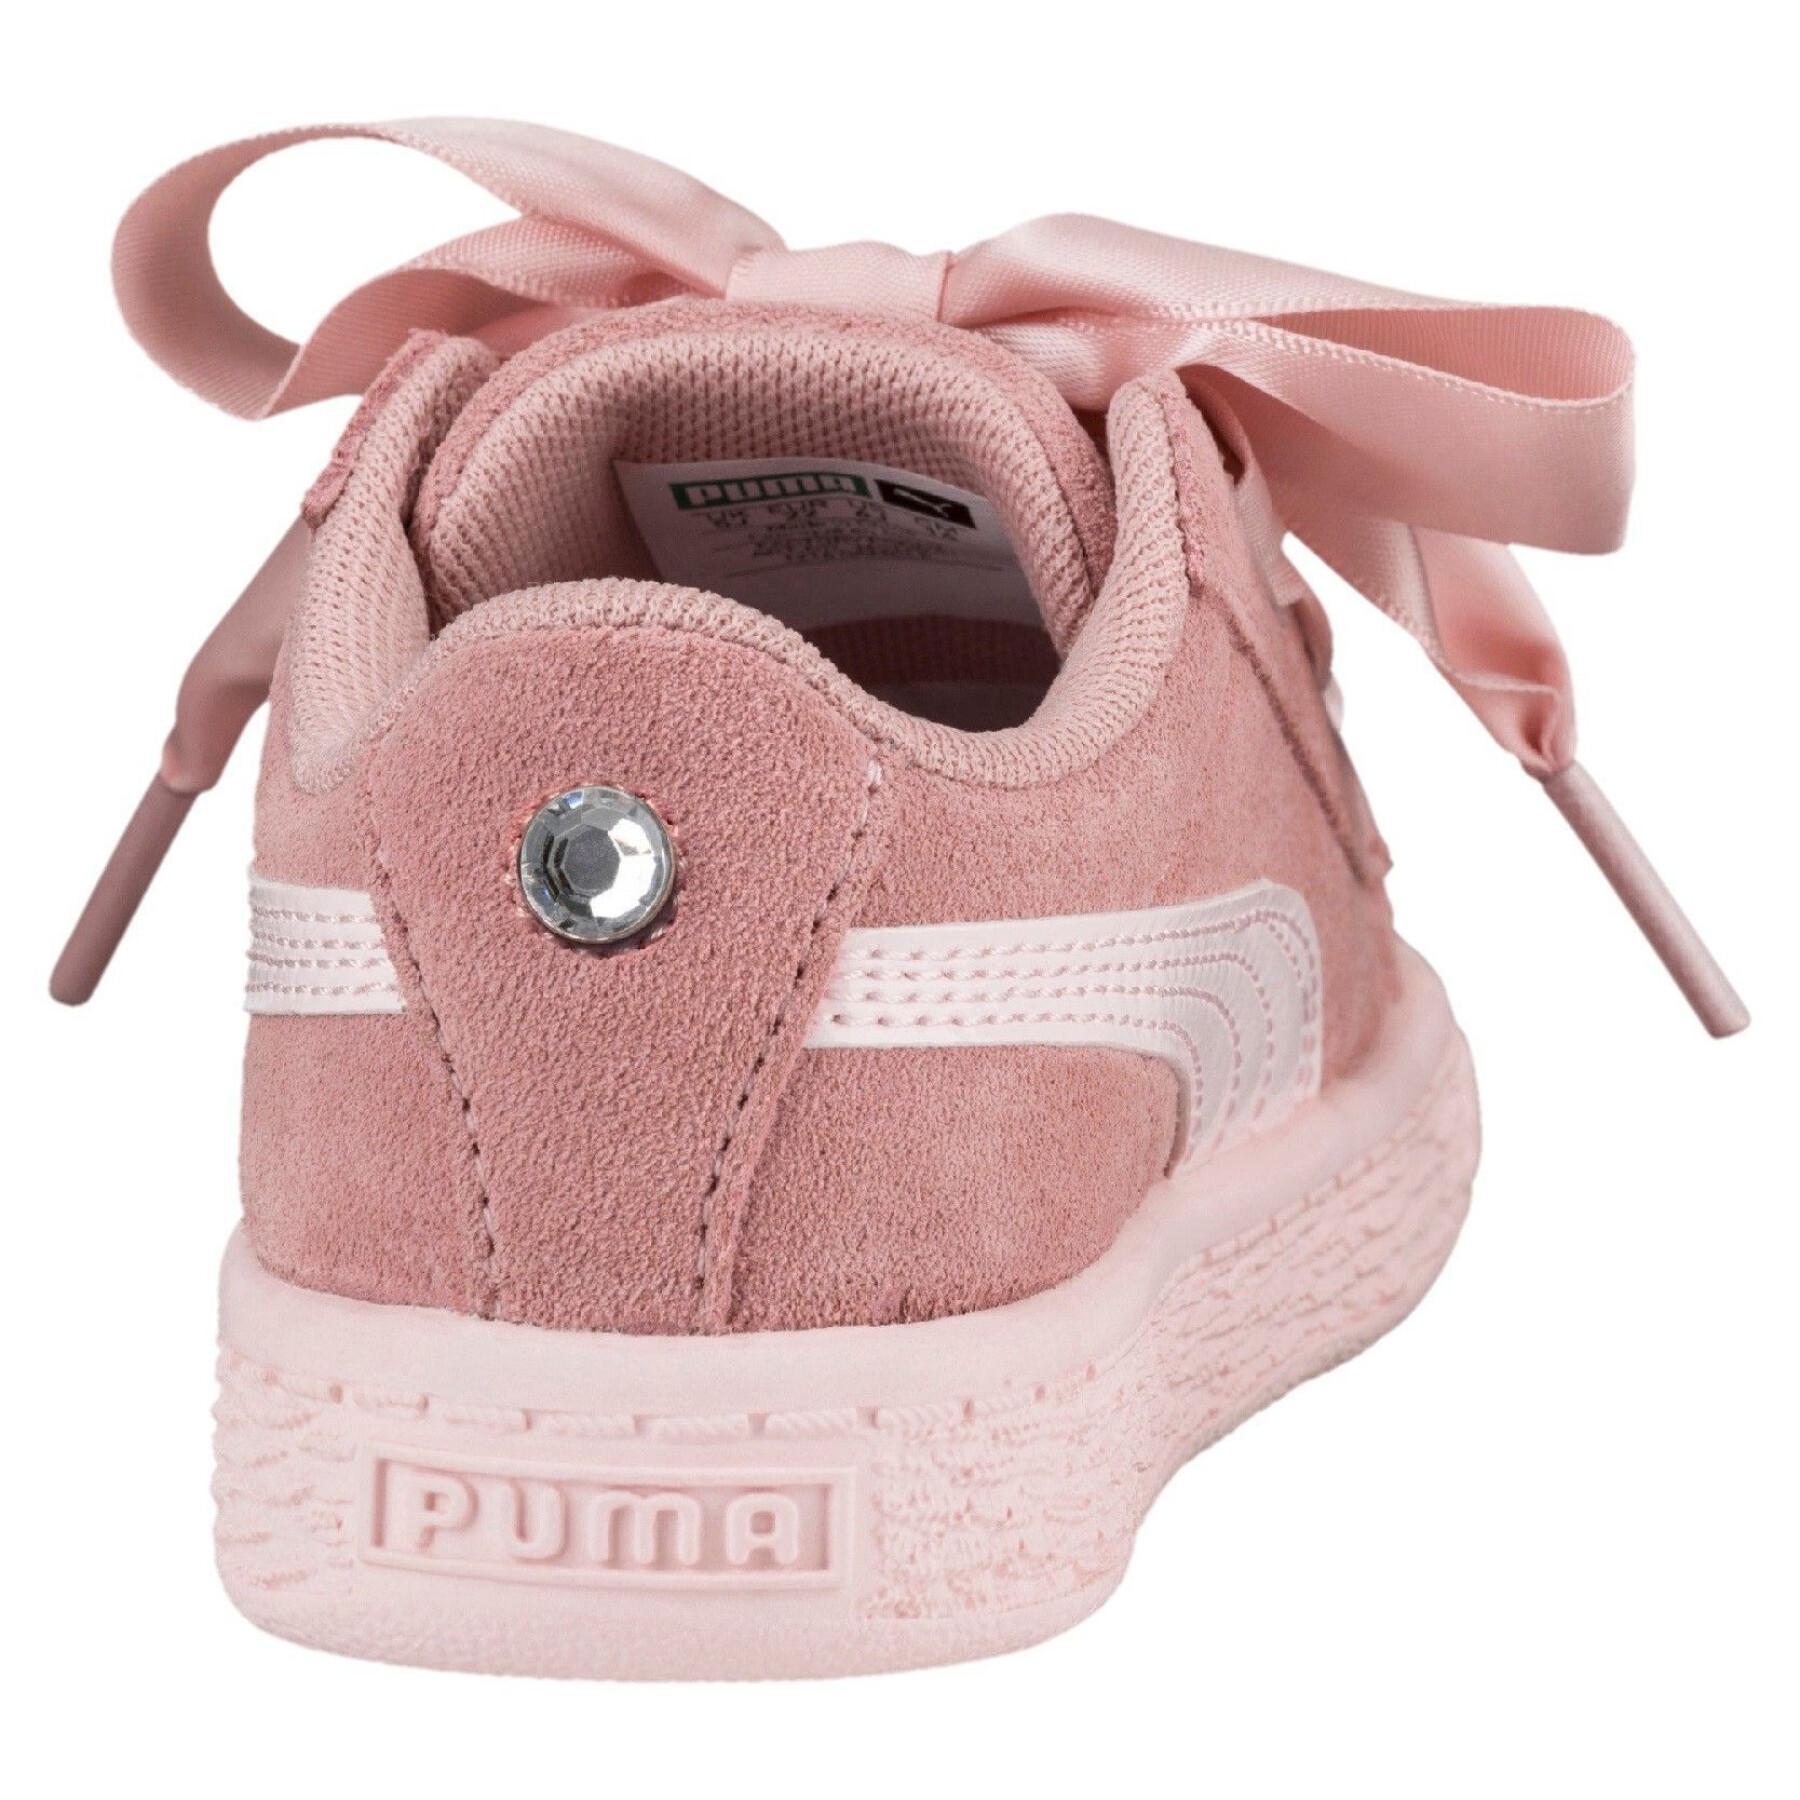 Children's sneakers Puma Suede Heart Jewel